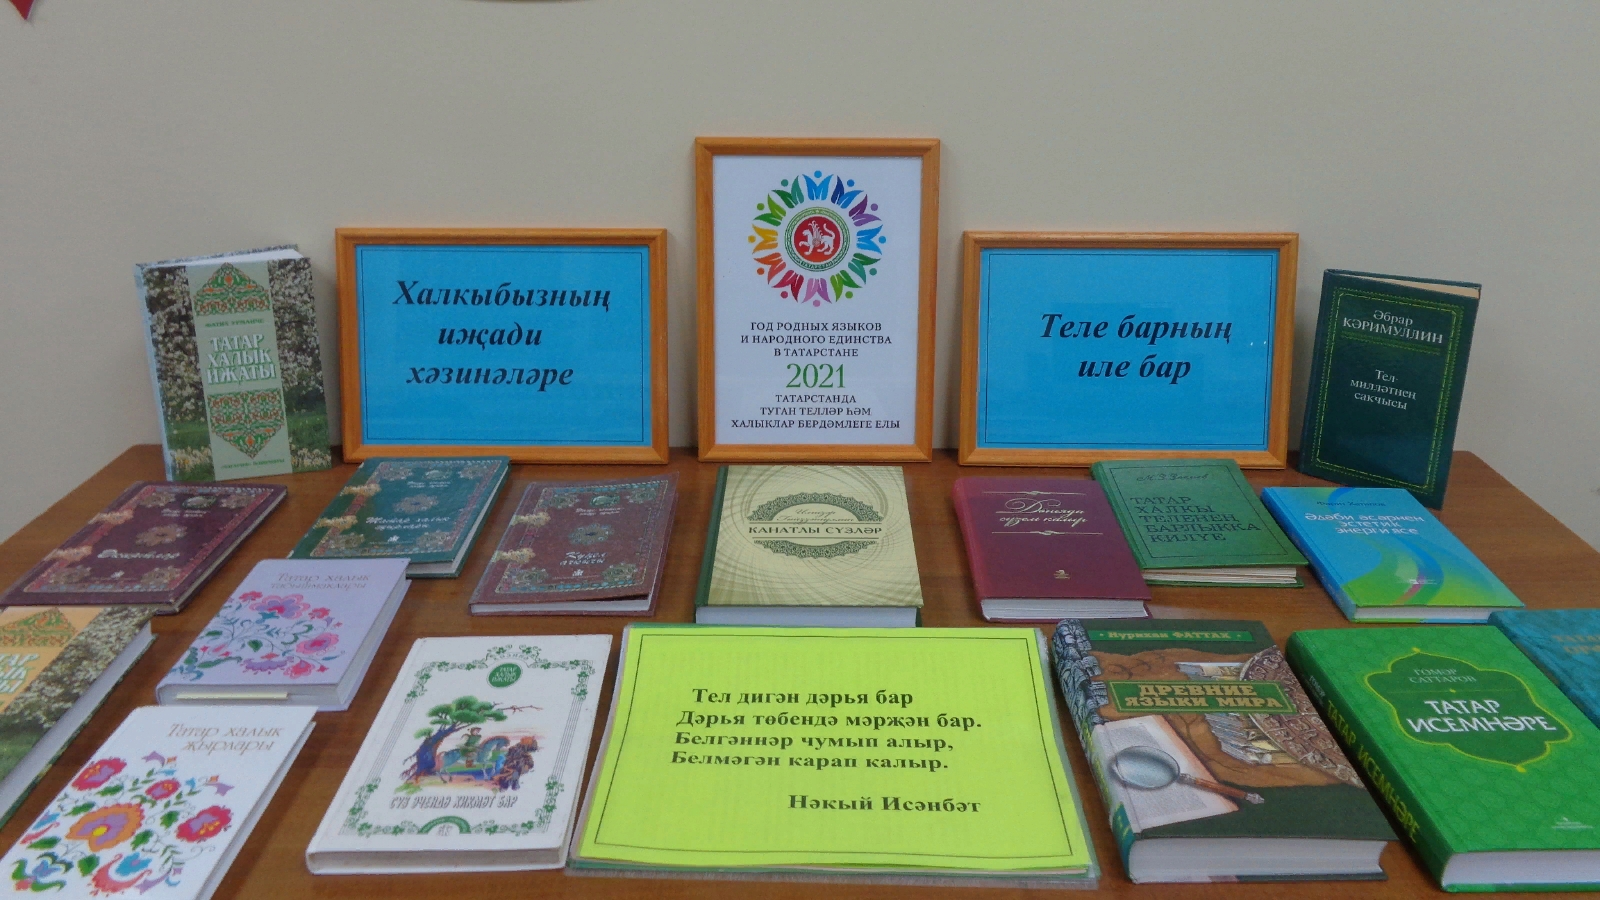 Выставка в библиотеке к году родных языков и народного единства